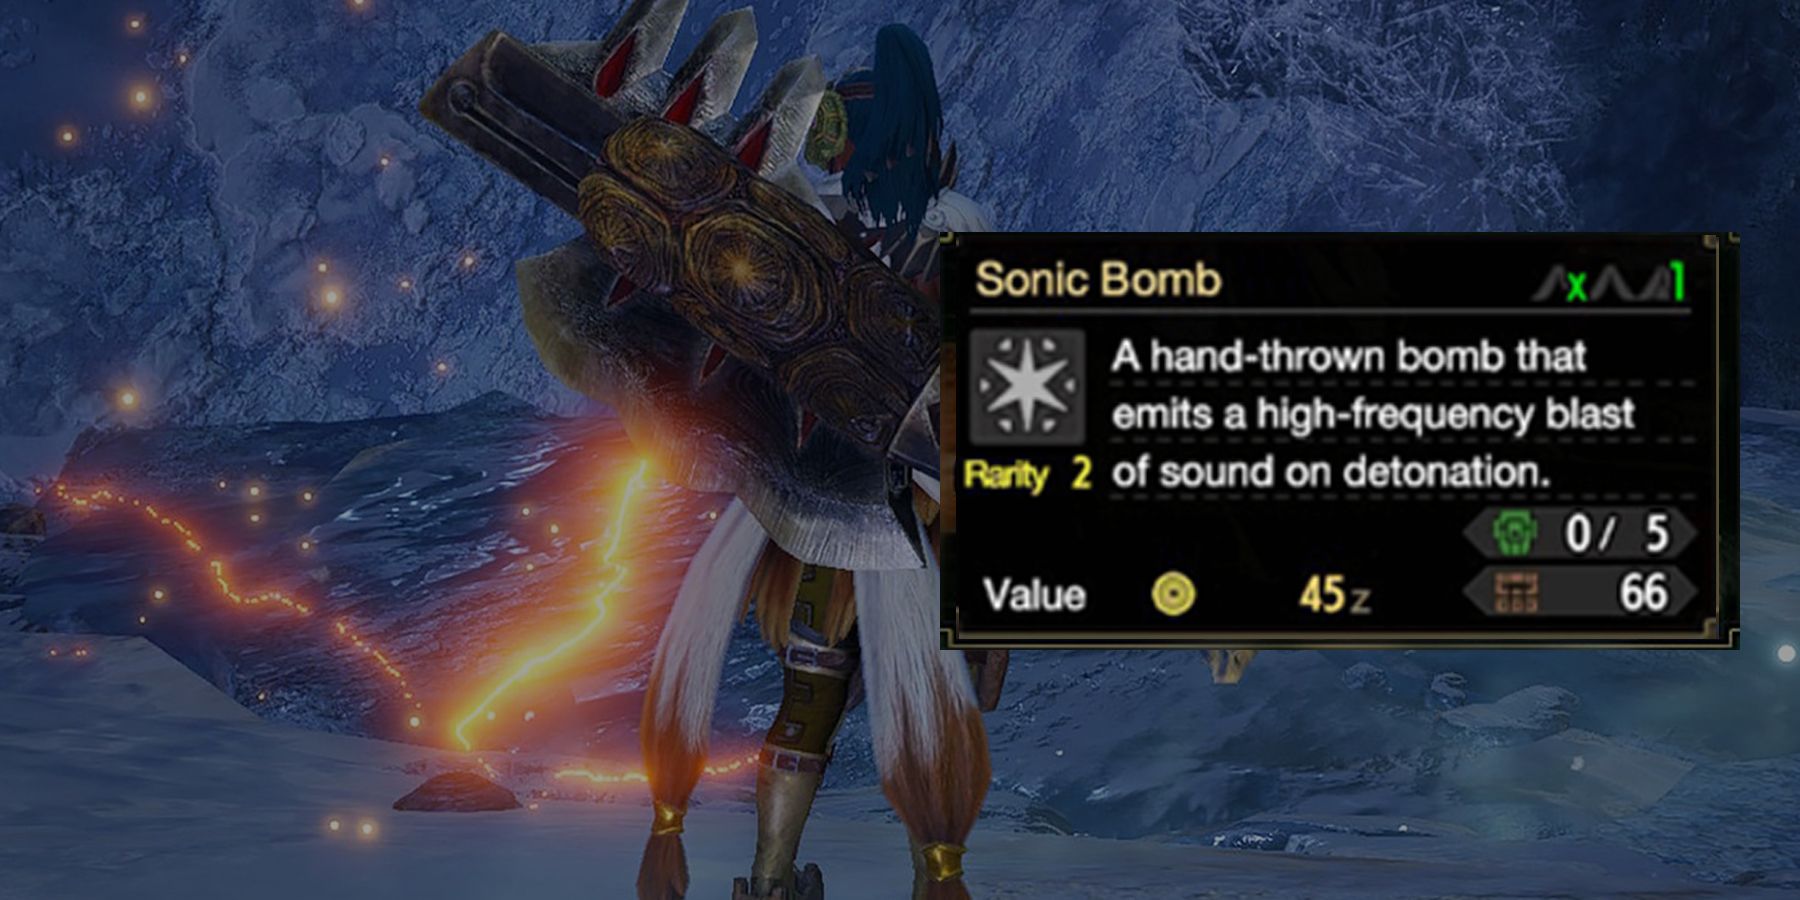 Sonic Bomb